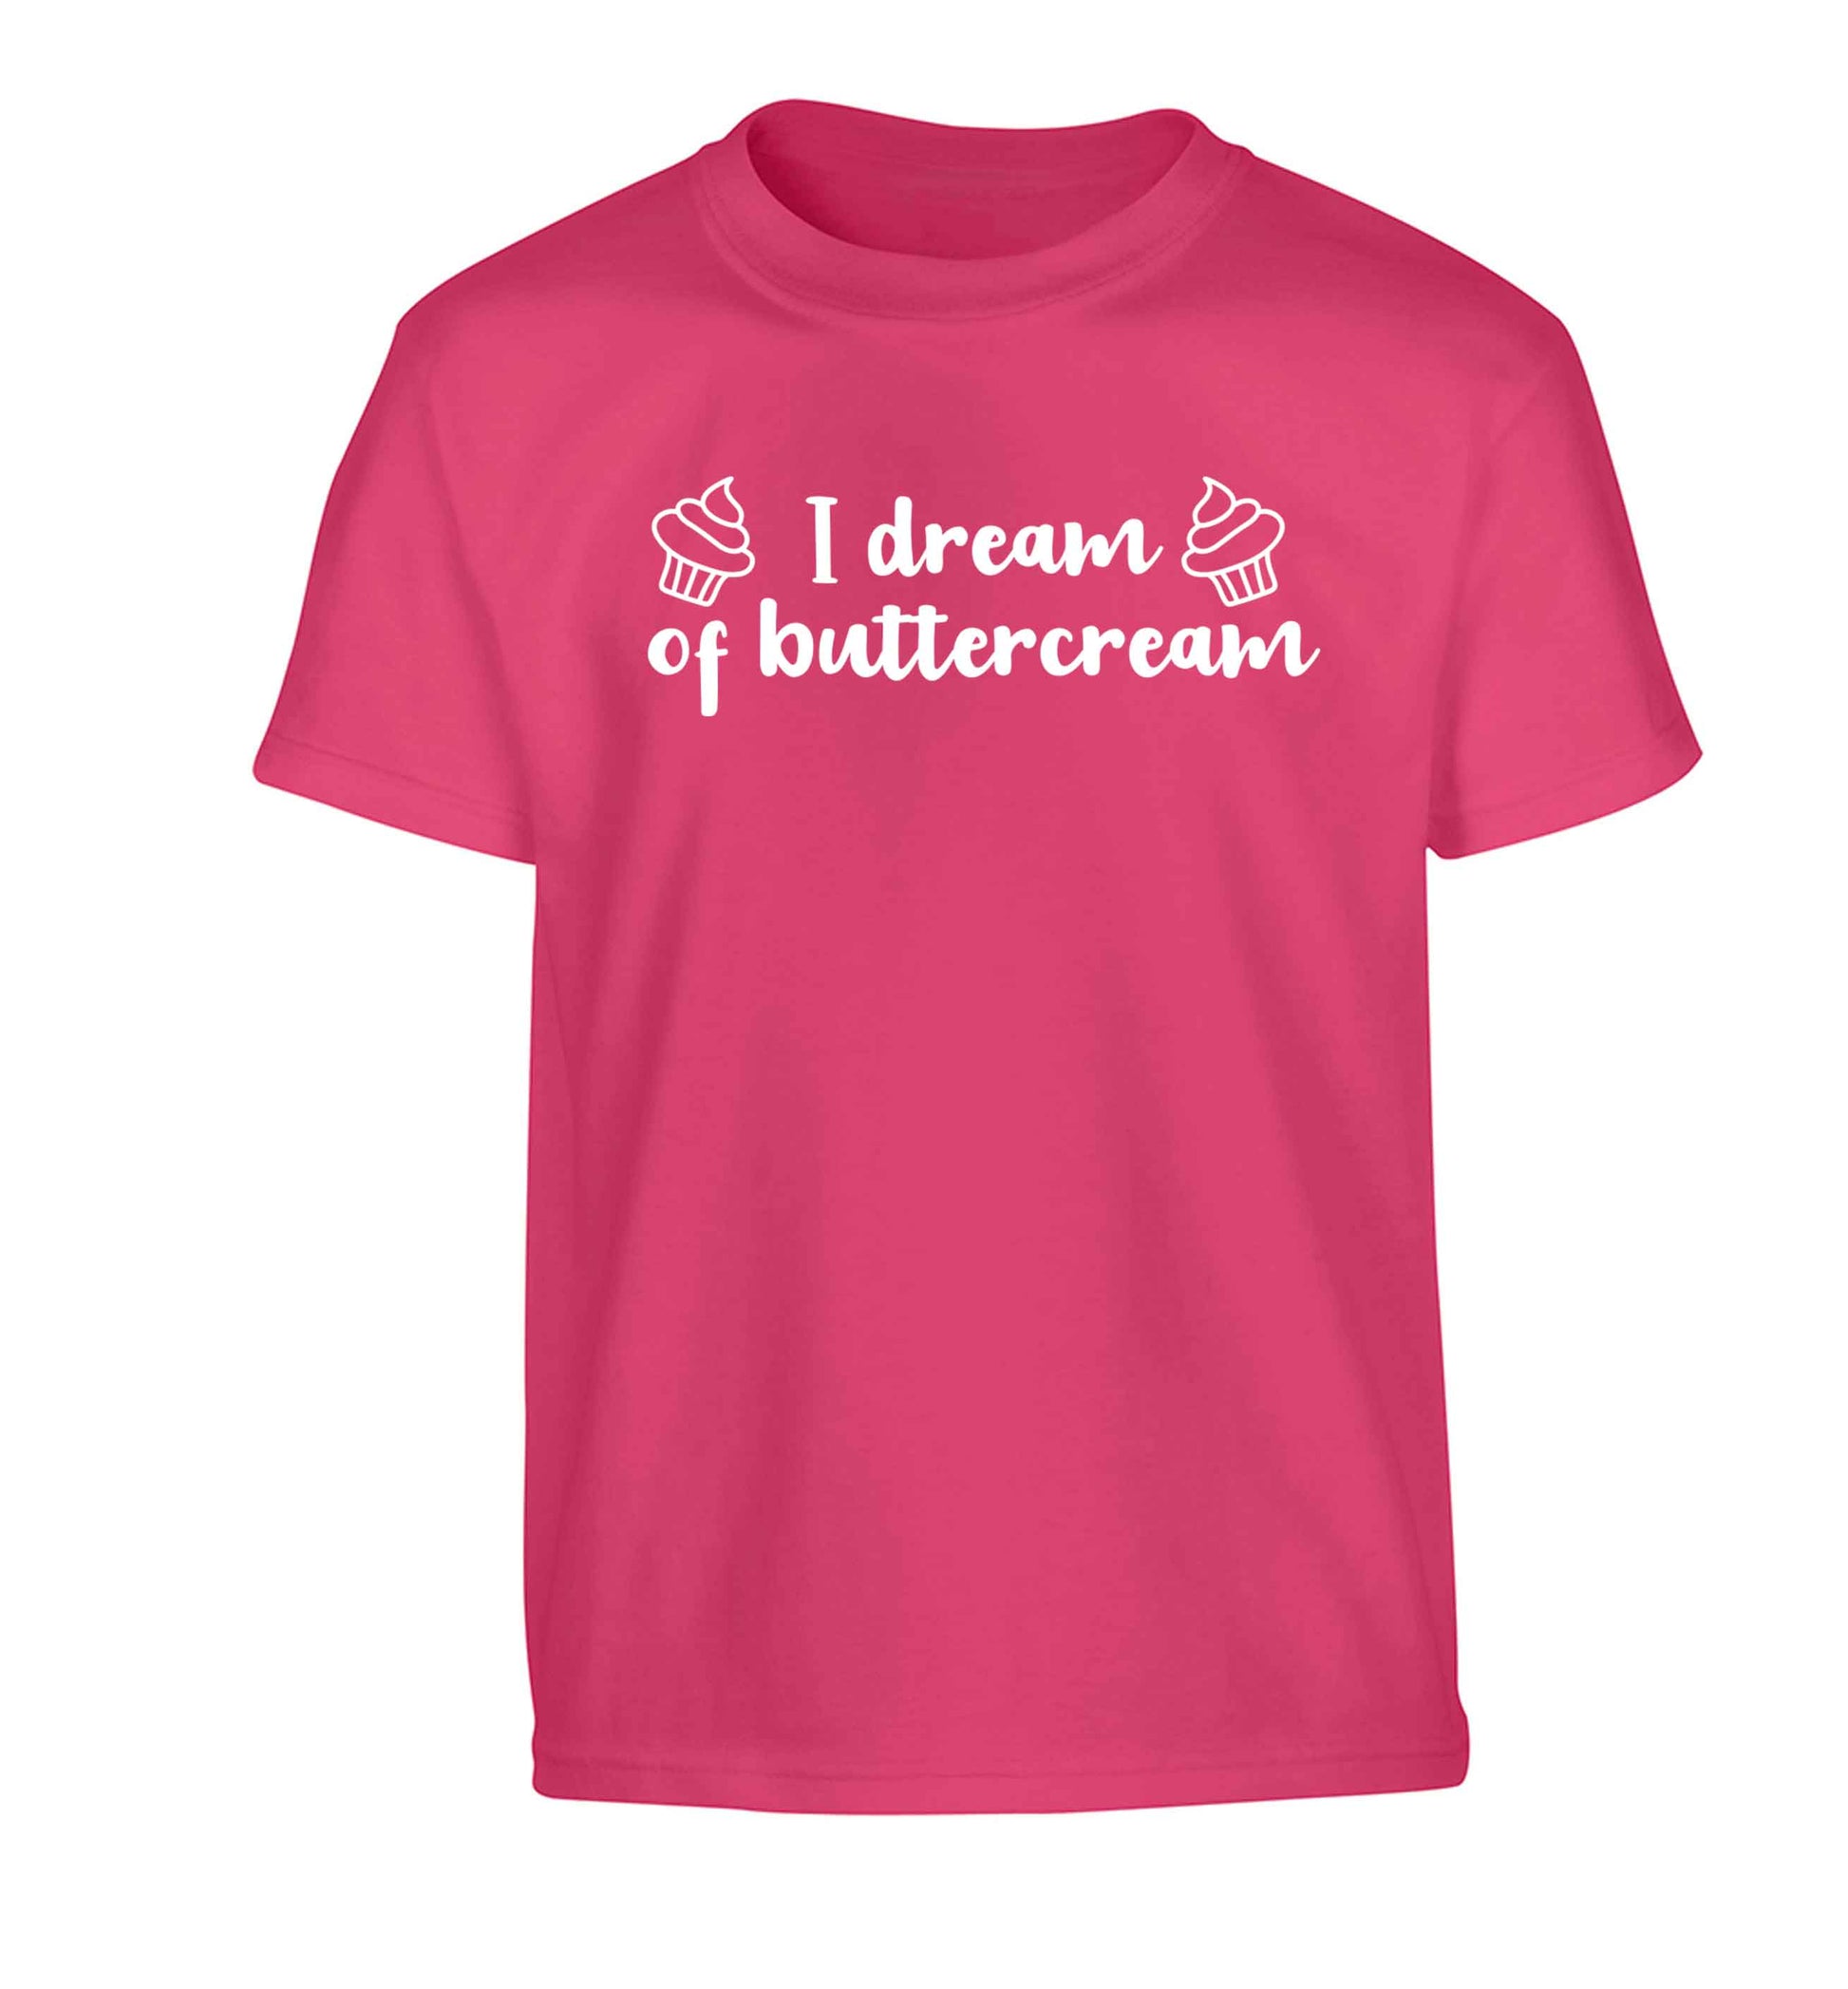 I dream of buttercream Children's pink Tshirt 12-13 Years